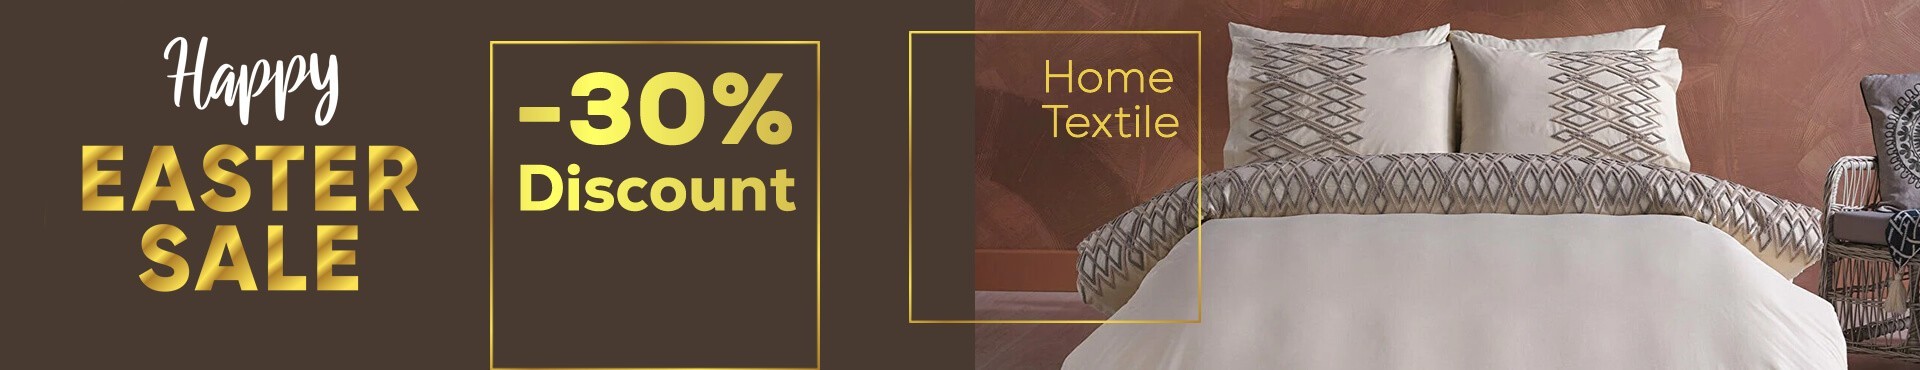 Home Textile 30%